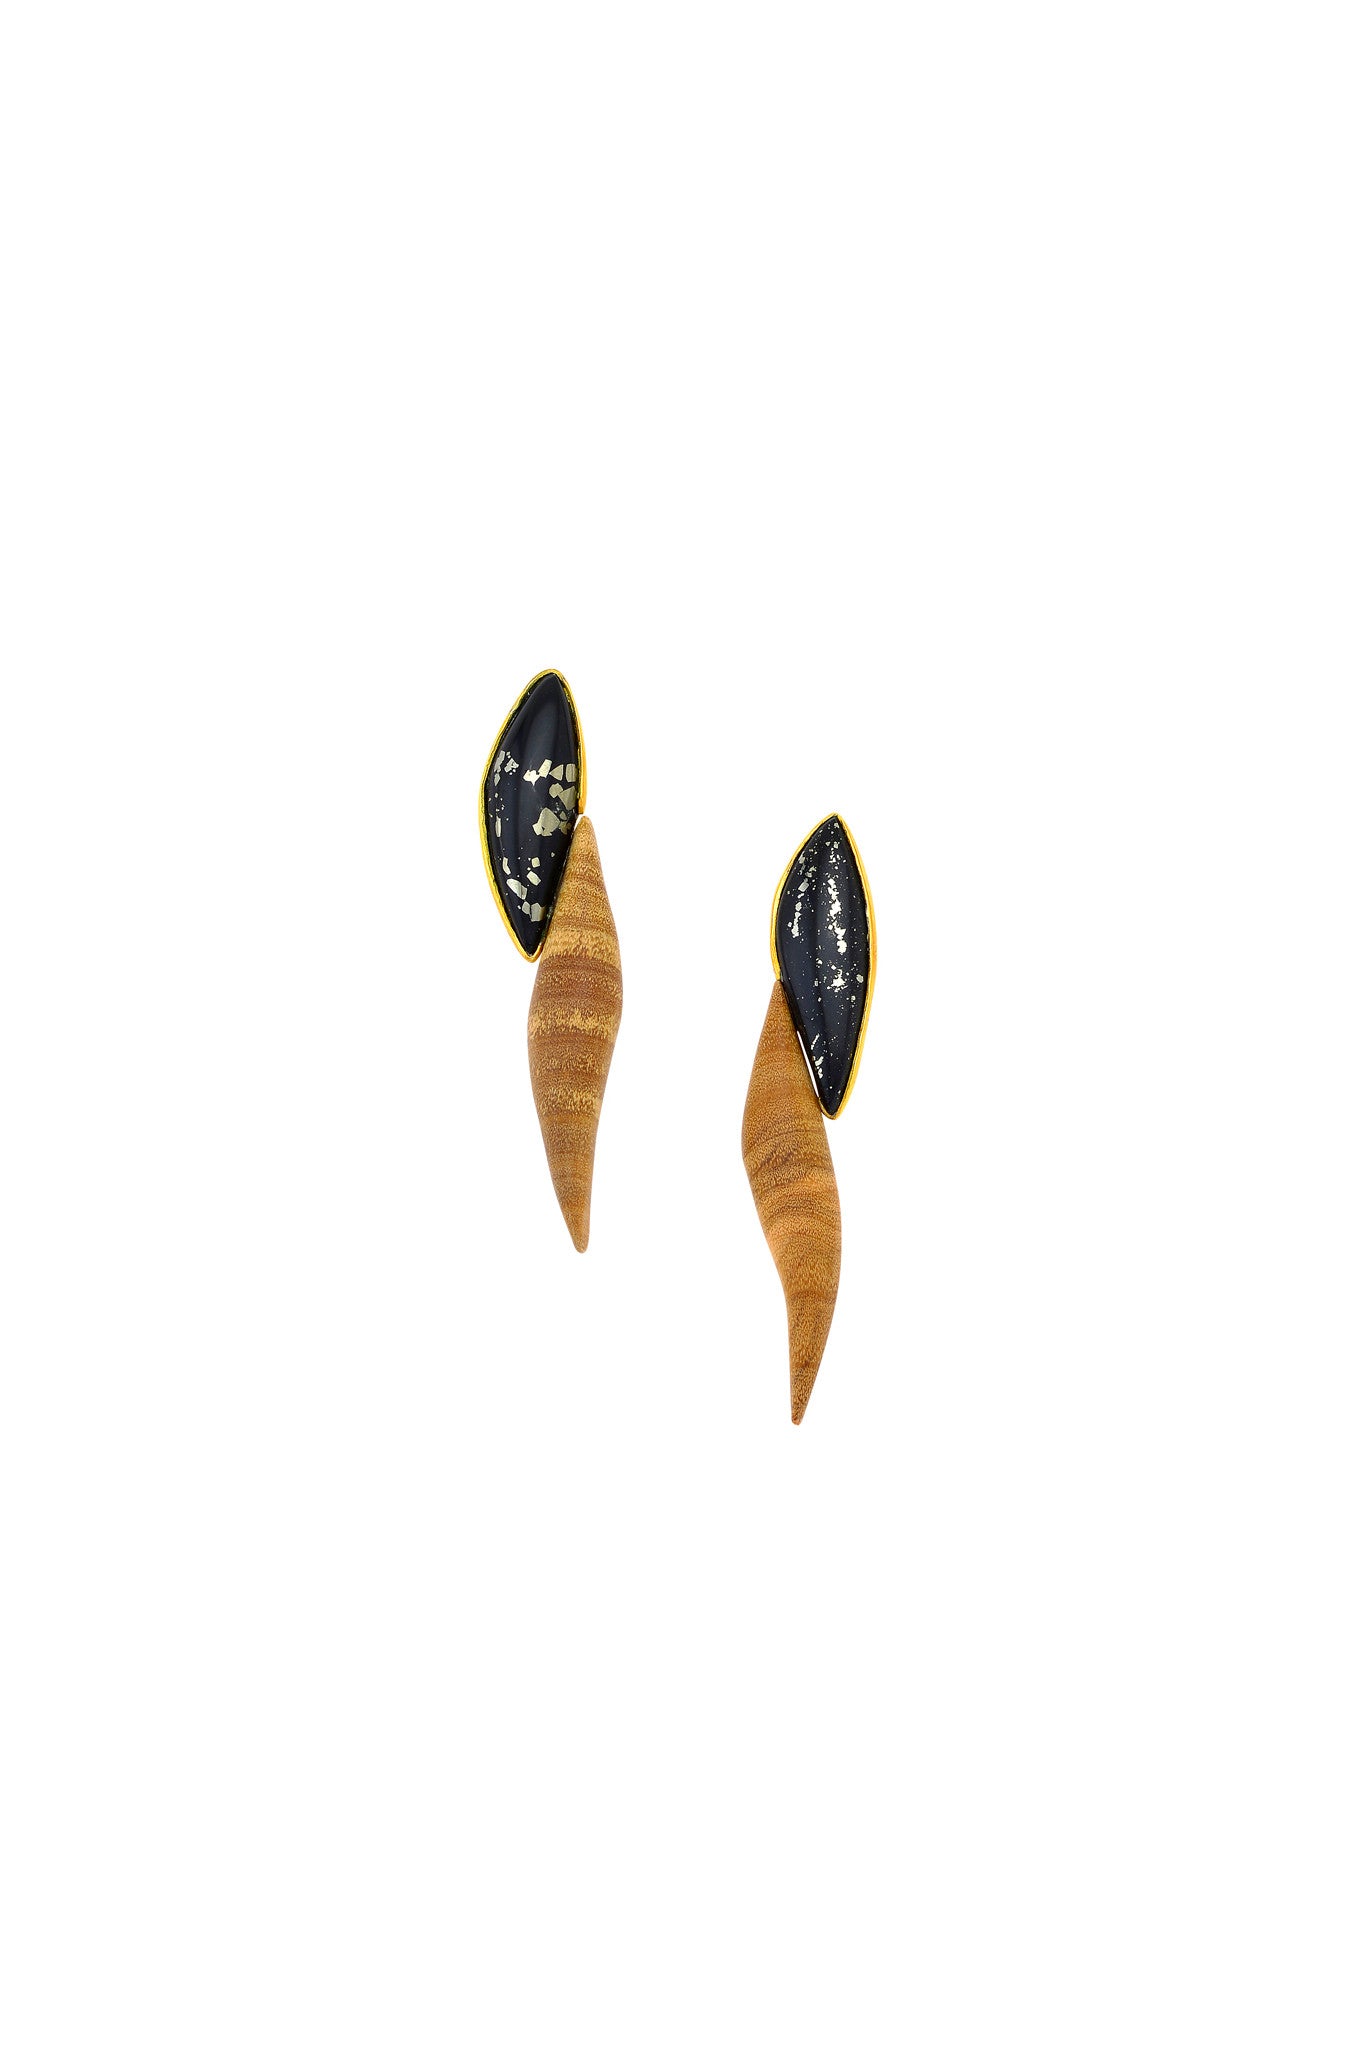 Σκουλαρίκια Enosis μικρά με ξύλο και πέτρα